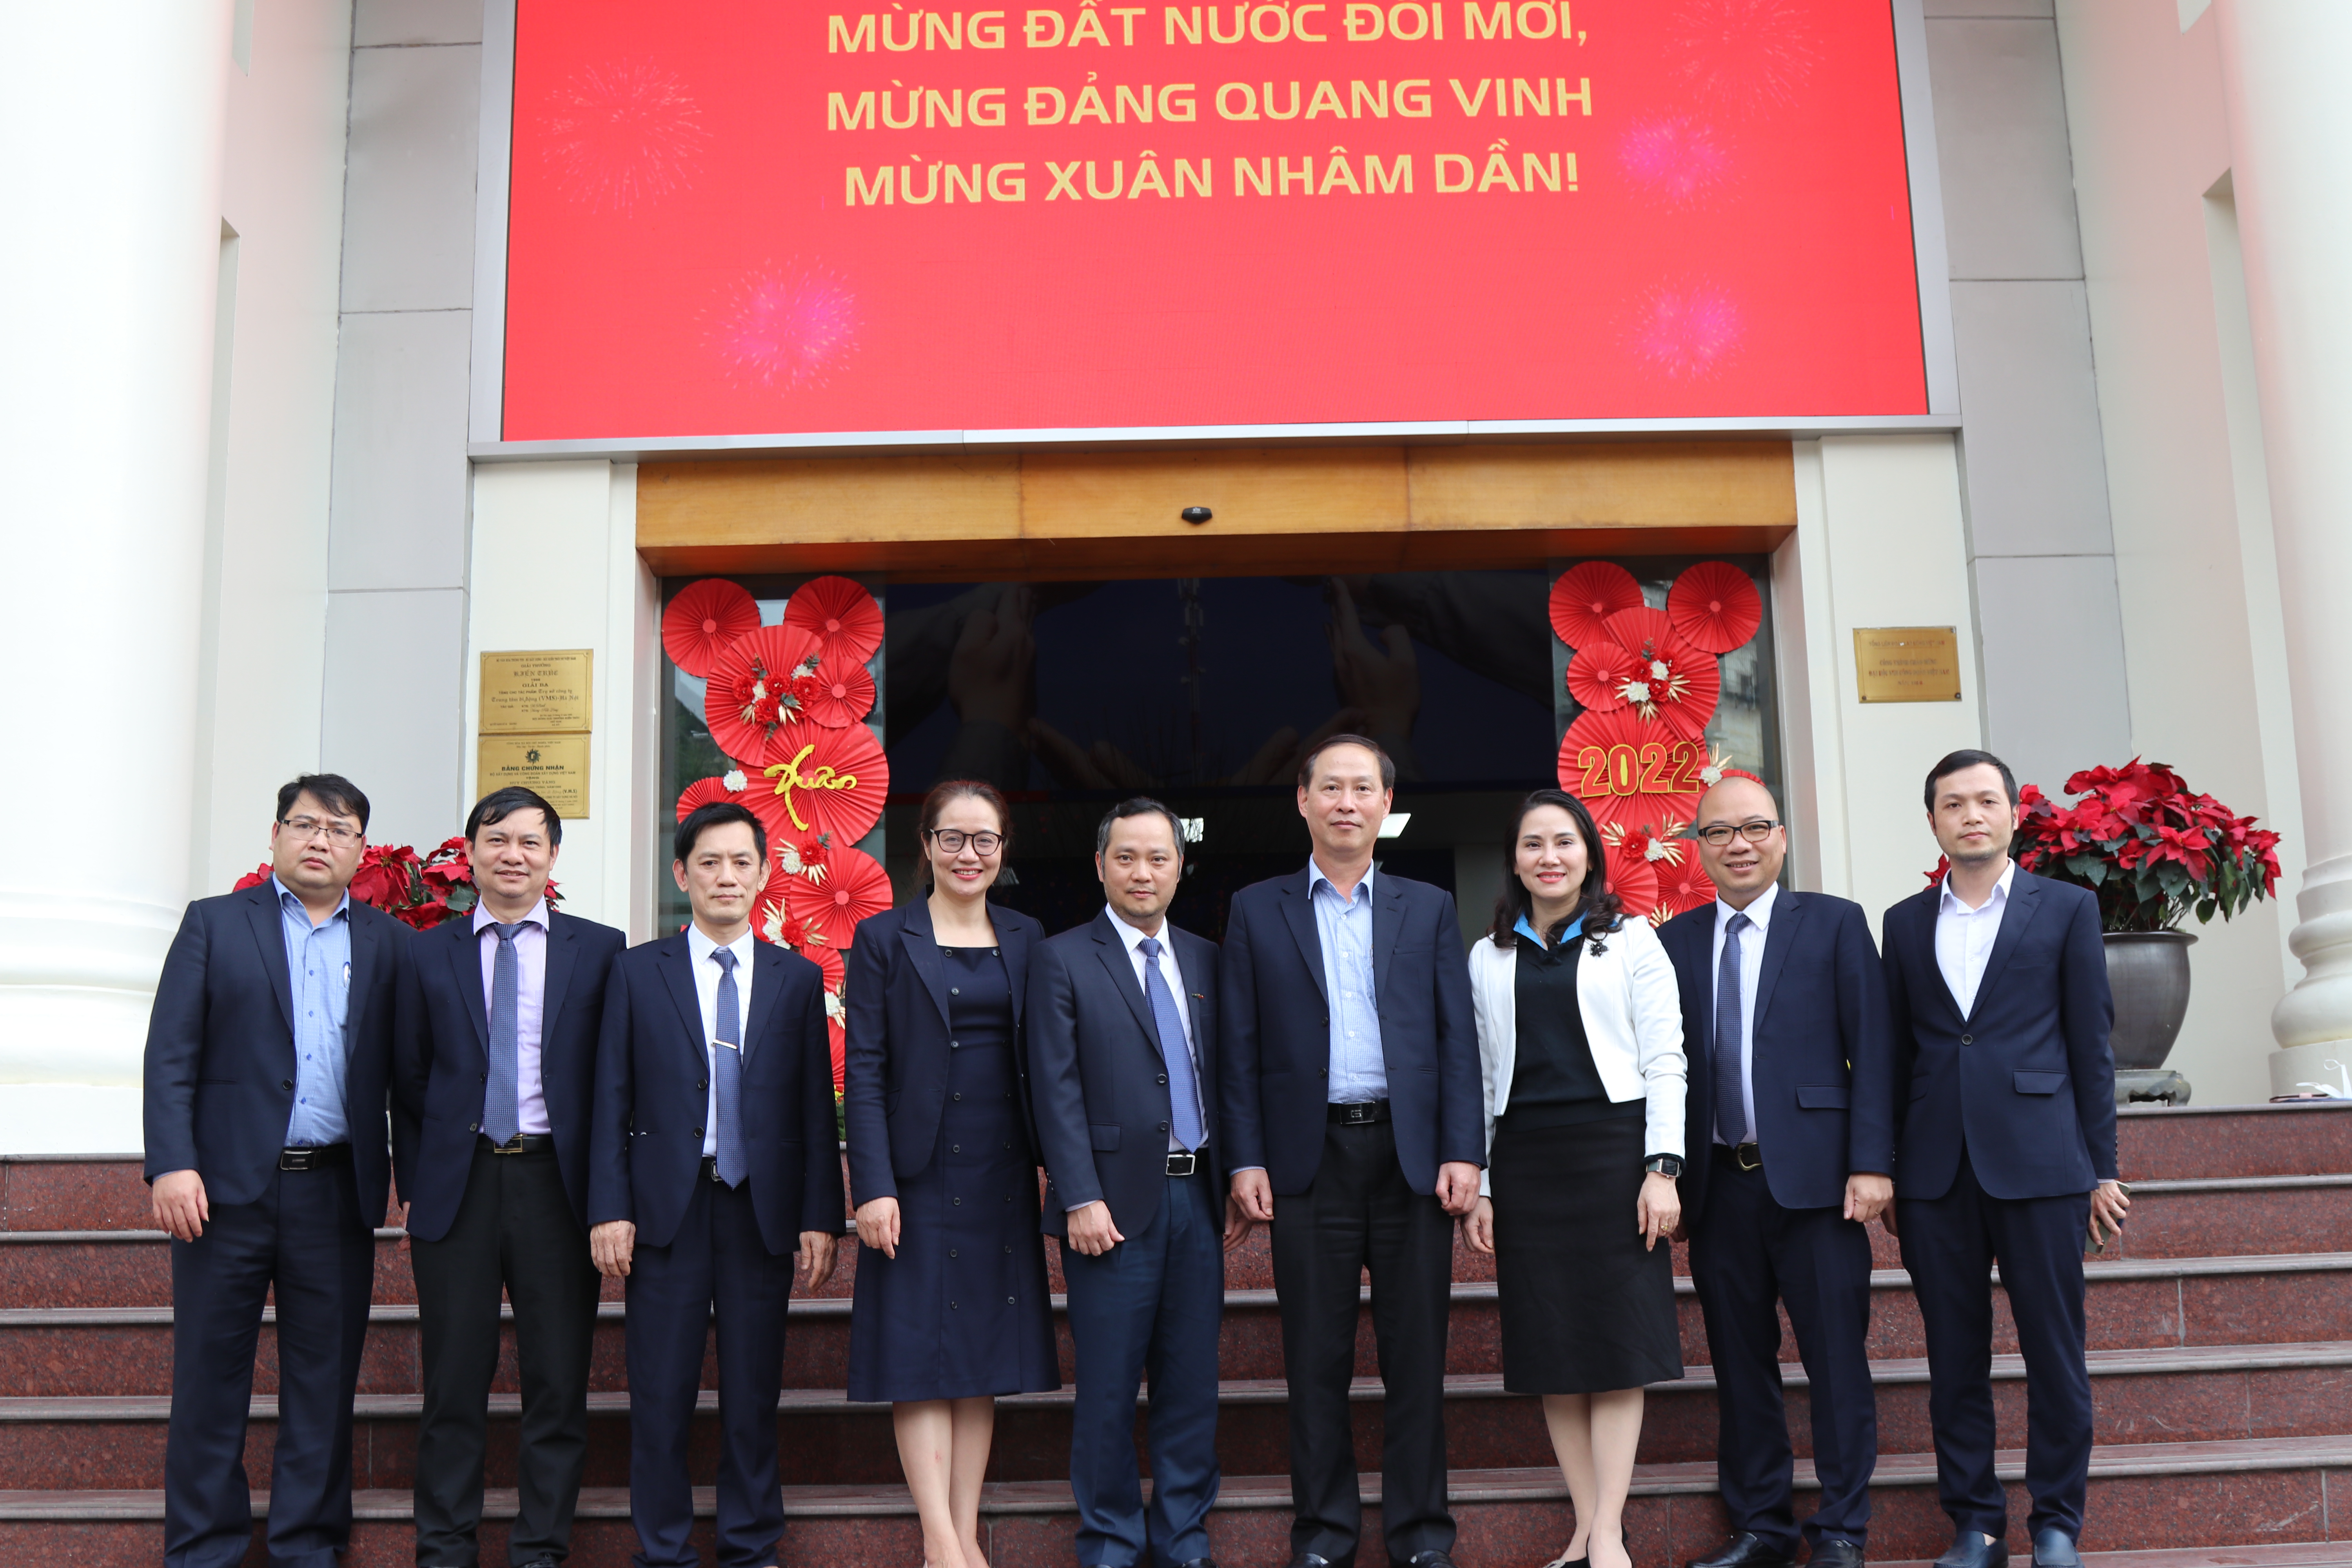 Công đoàn Thông tin và Truyền thông Việt Nam  tổ chức các hoạt động chăm lo cho đoàn viên và người lao động  nhân dịp Tết Nguyên đán Nhâm Dần 2022